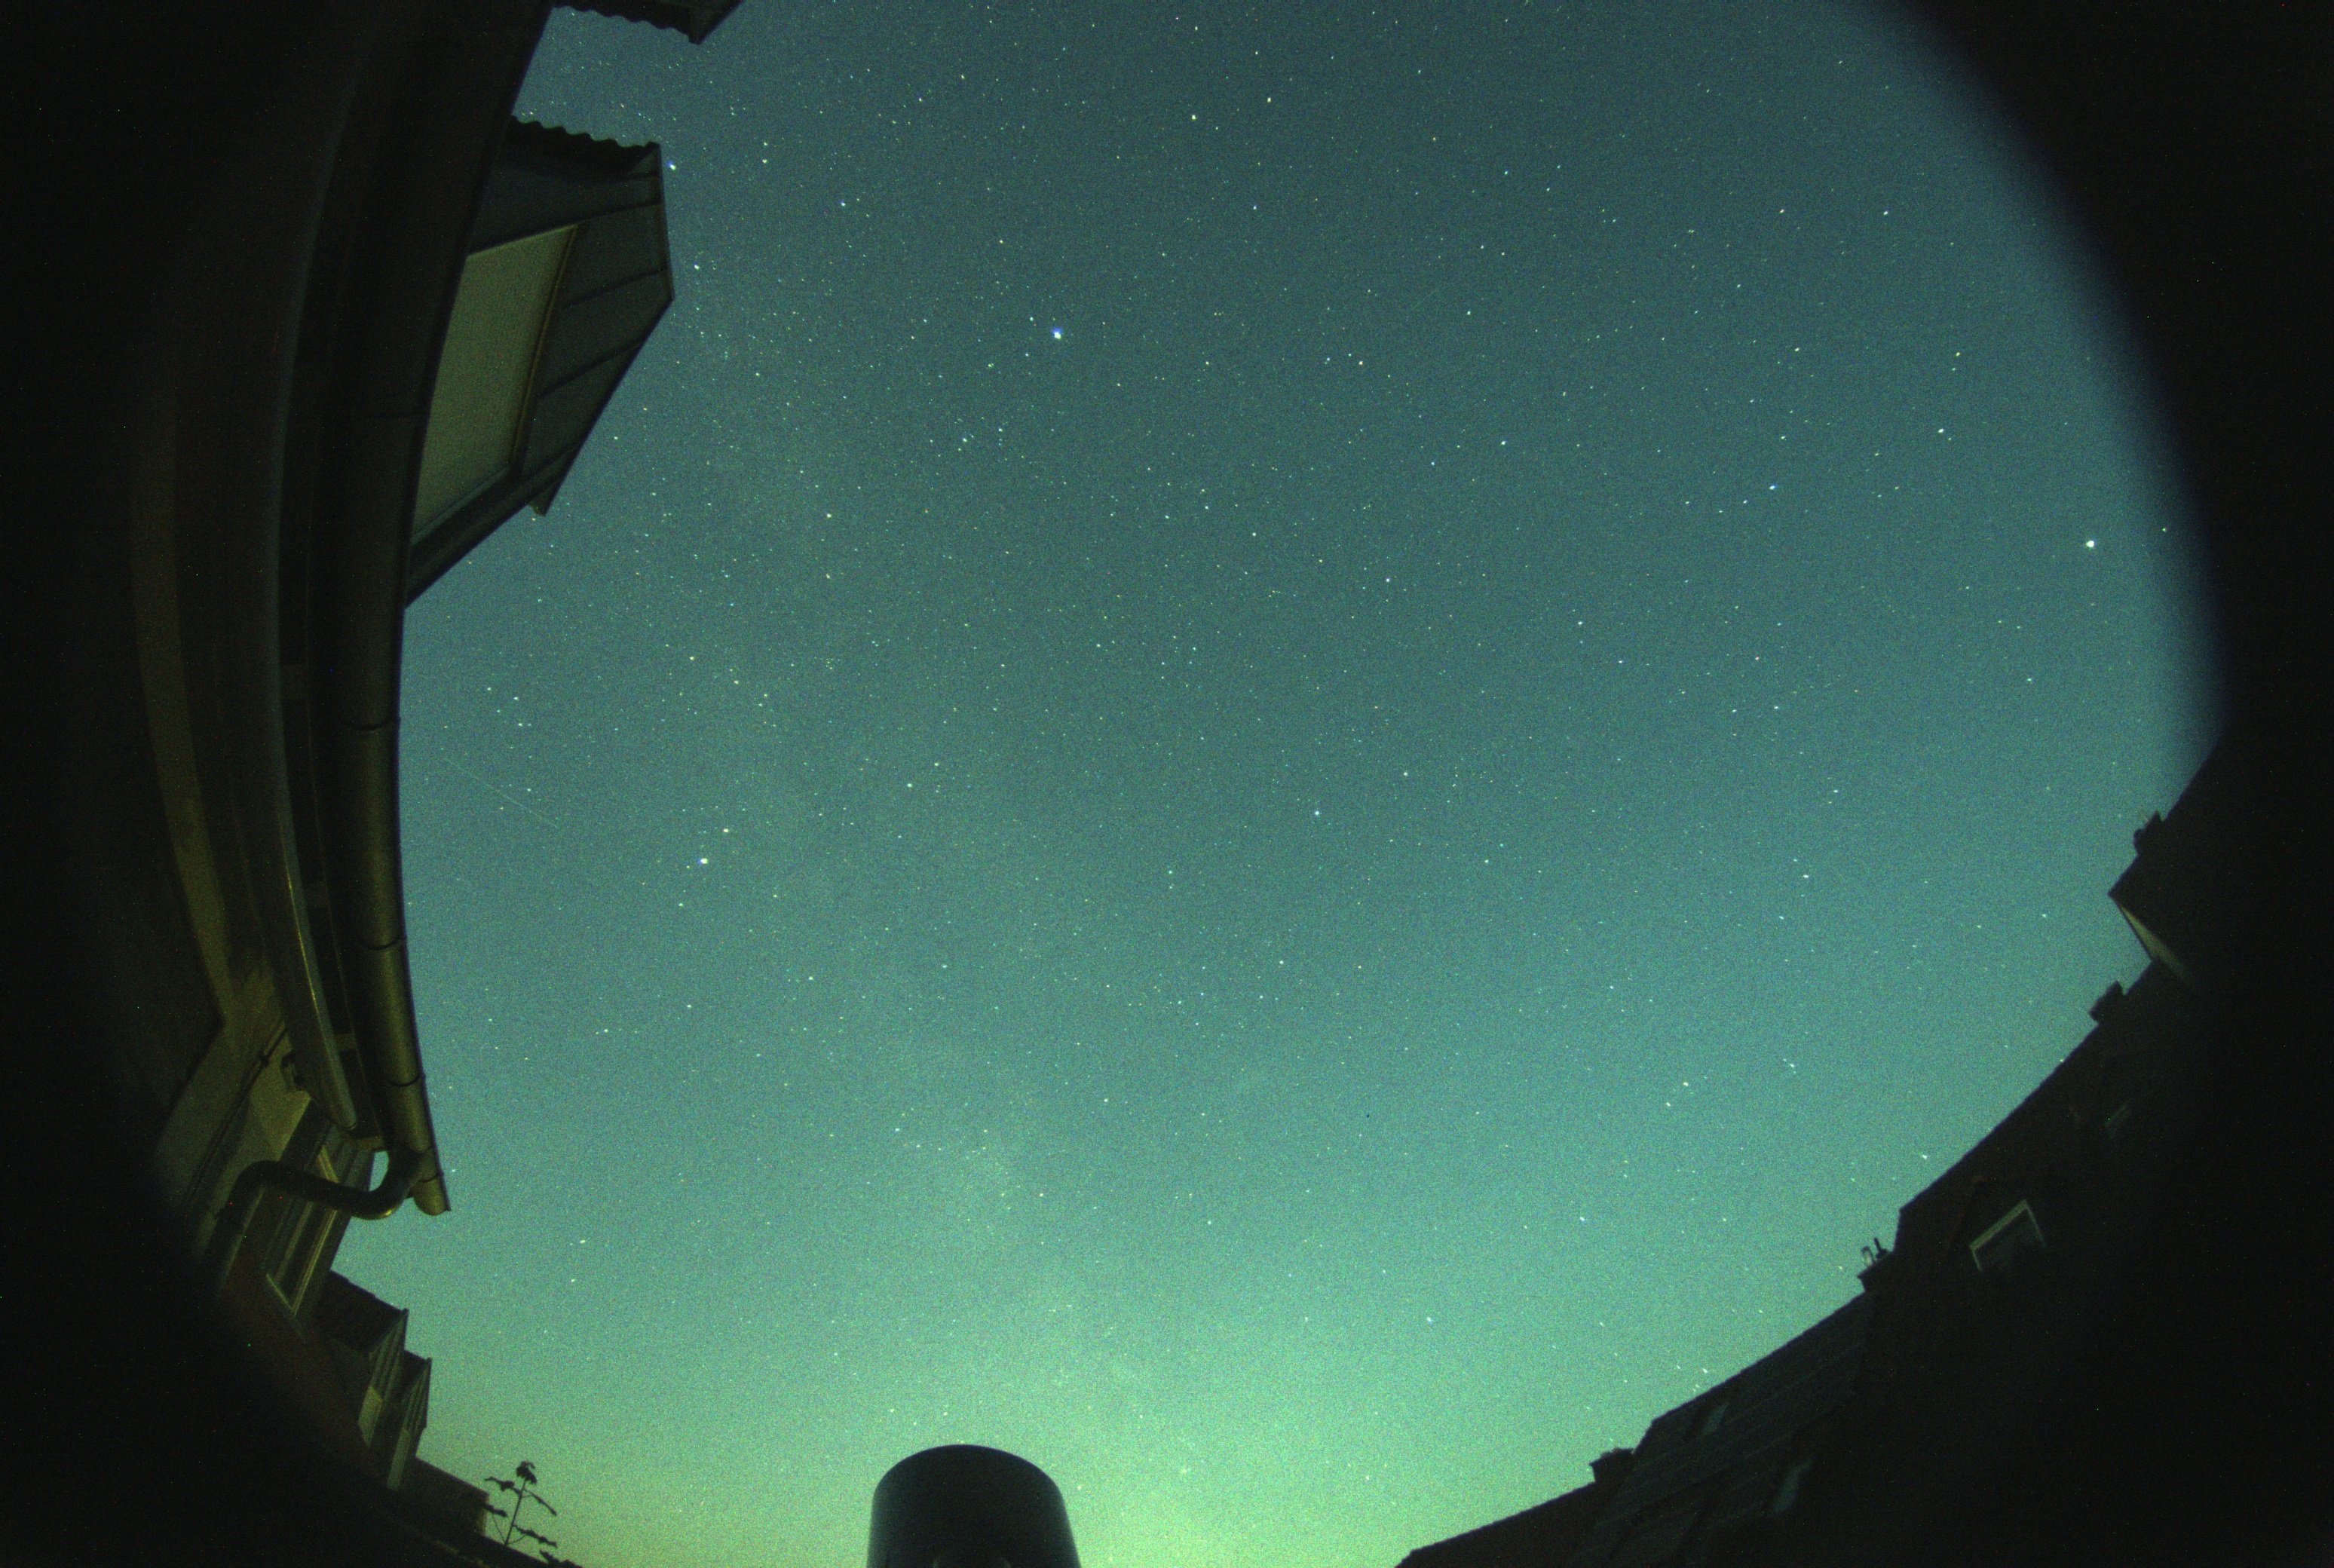 Allyks camera from K87 Dettelbach Vineyard Observatory